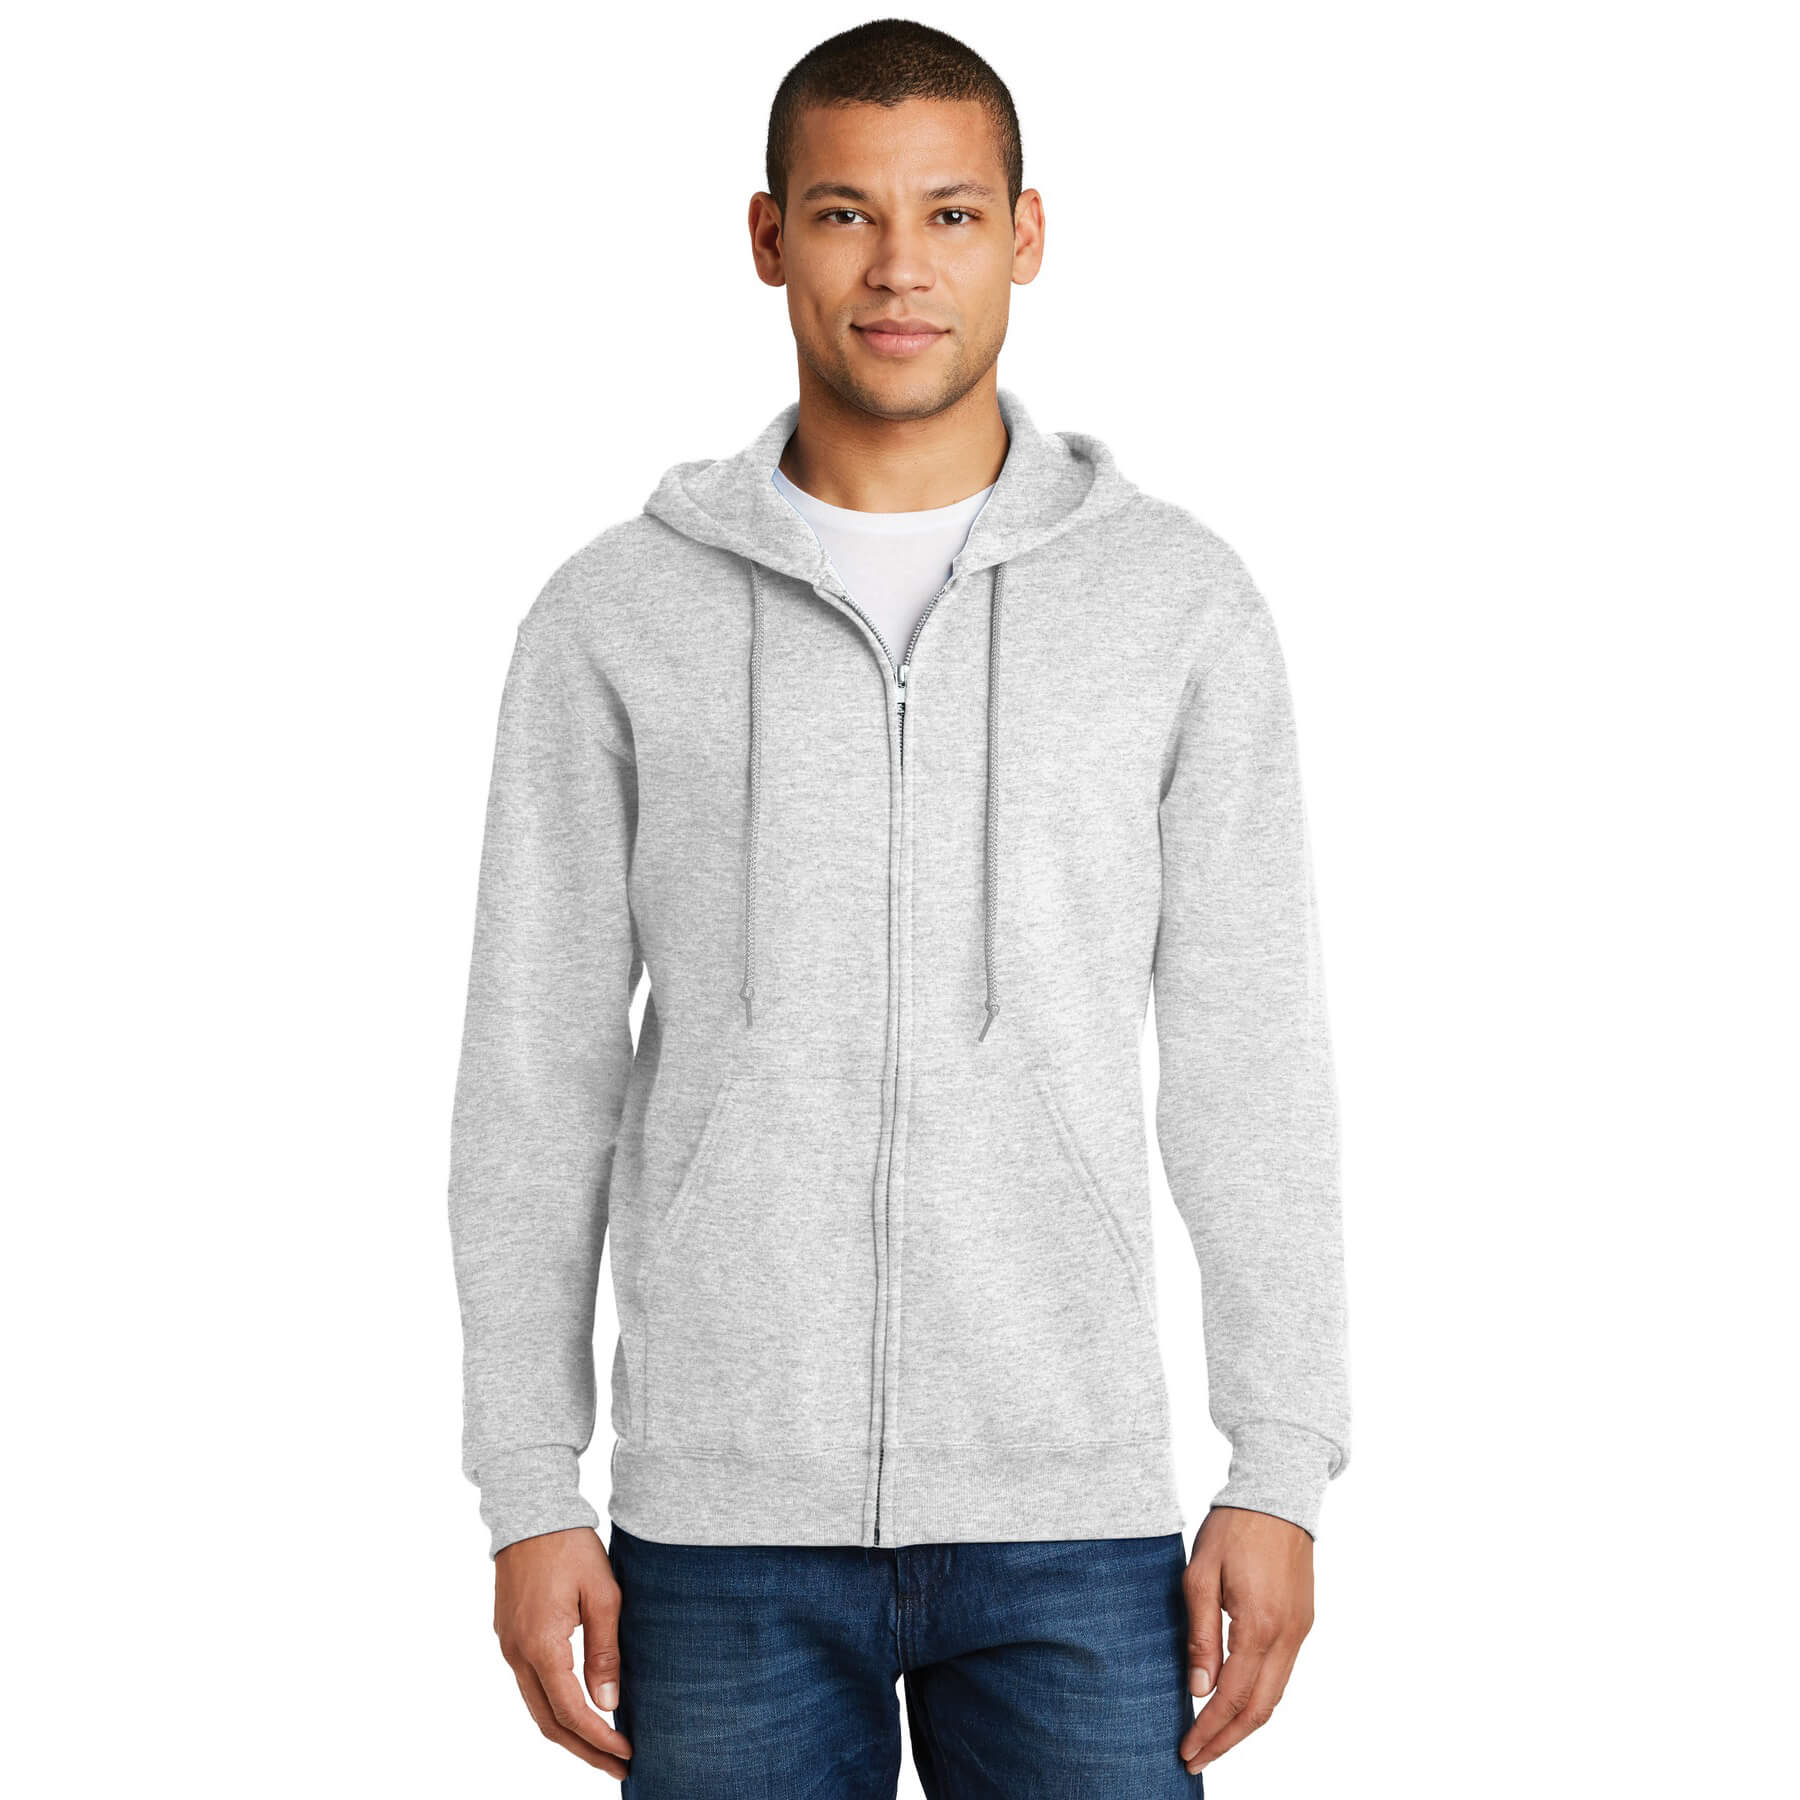 JERZEES ® - NuBlend ® Full-Zip Hooded Sweatshirt - Phelps USA